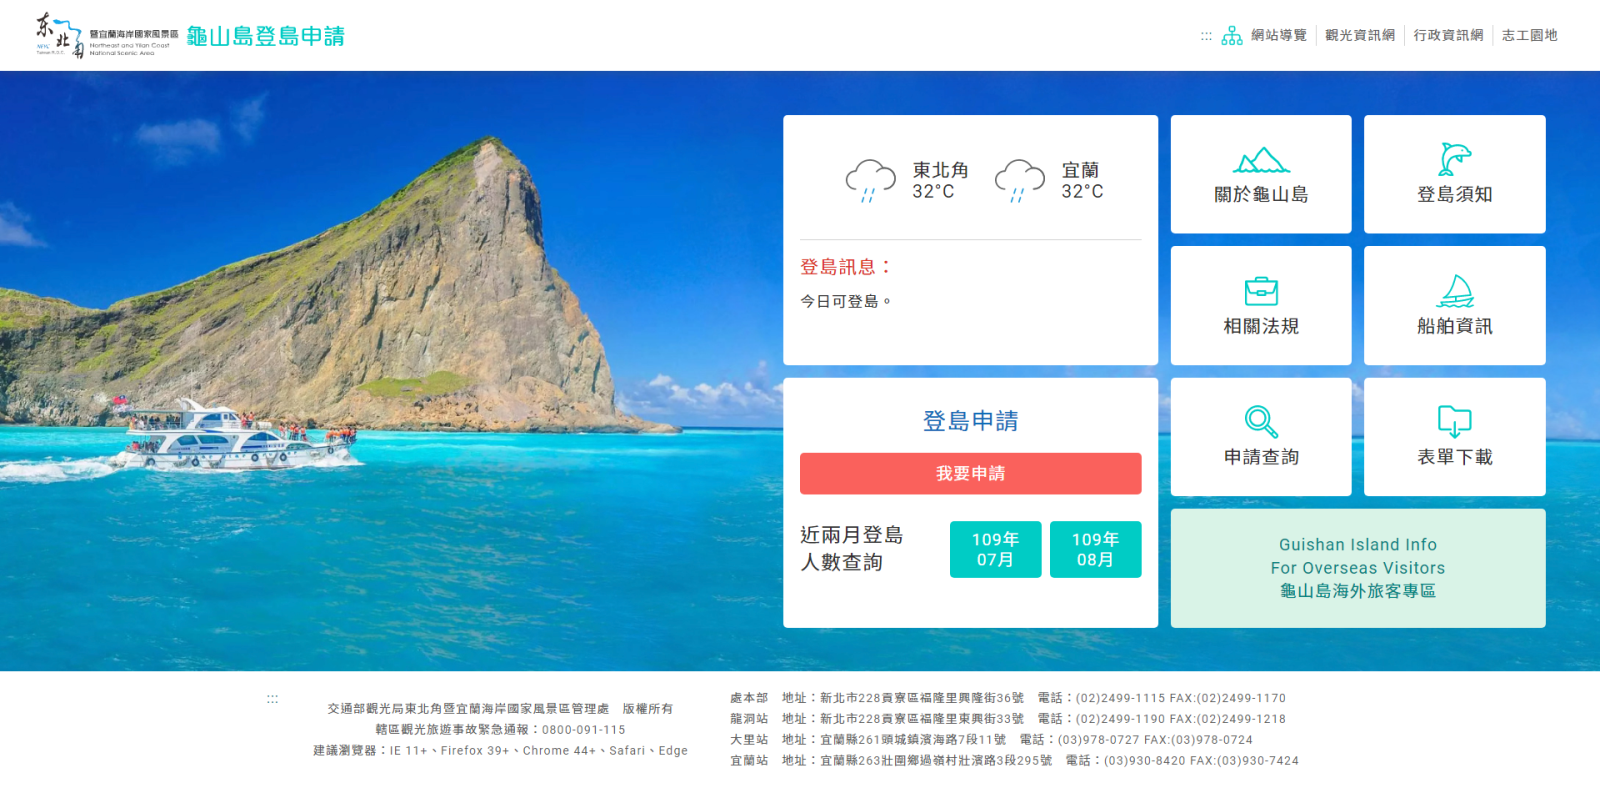 亀山島の着陸アプリケーションシステムの新しいベータ版が最初にリリースされます 試してフィードバックをお寄せください しばらくお待ちください 東北角及び宜蘭海岸国家風景区観光情報サイト